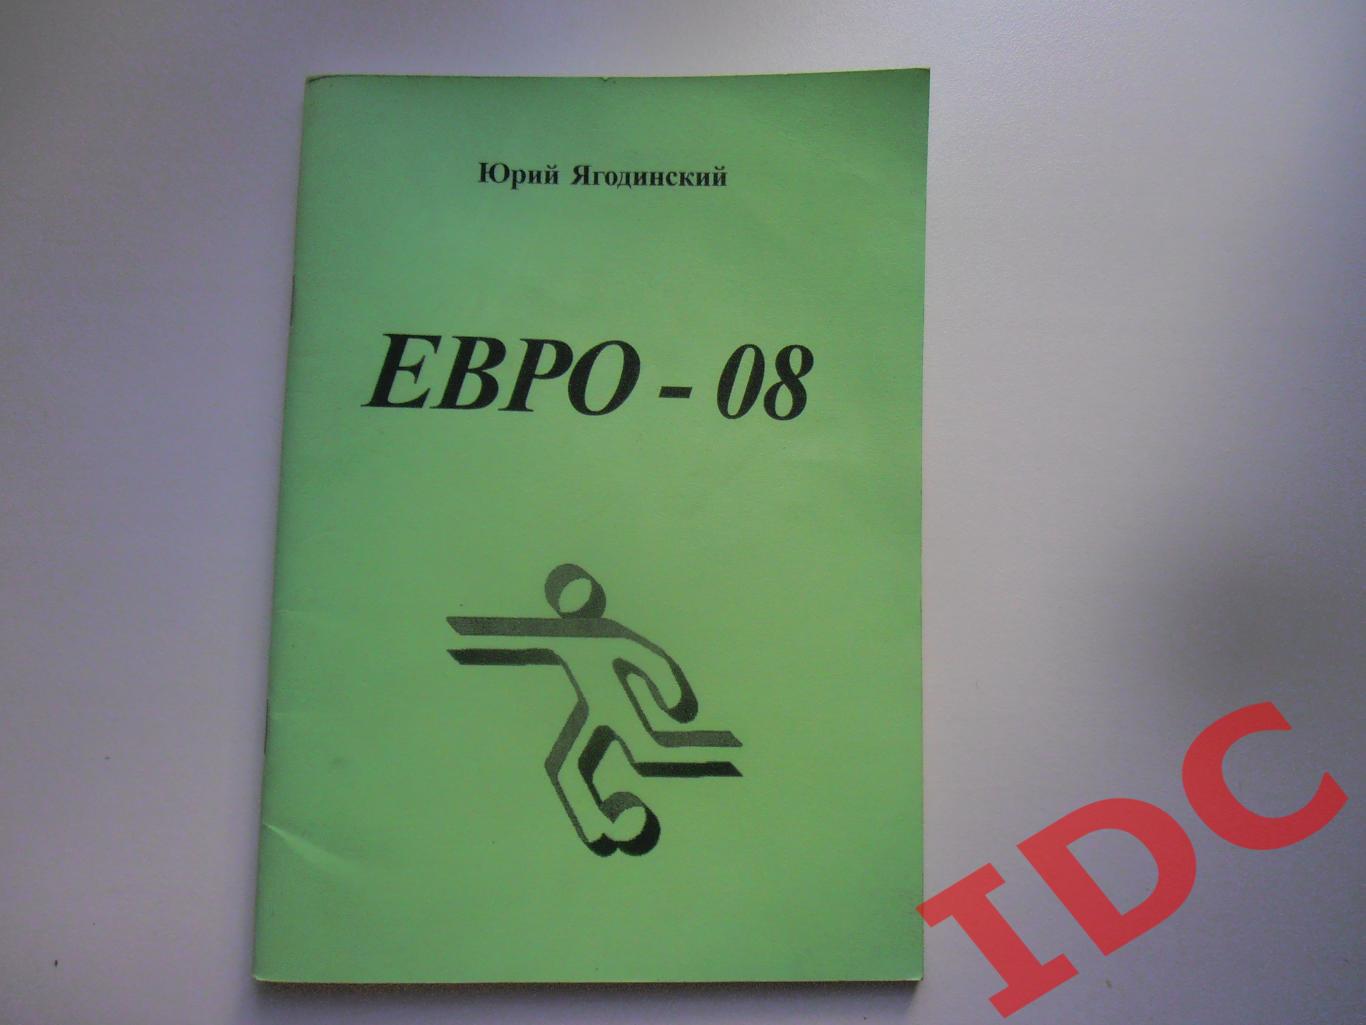 Юрий Ягодинский ЕВРО-08+автограф автора